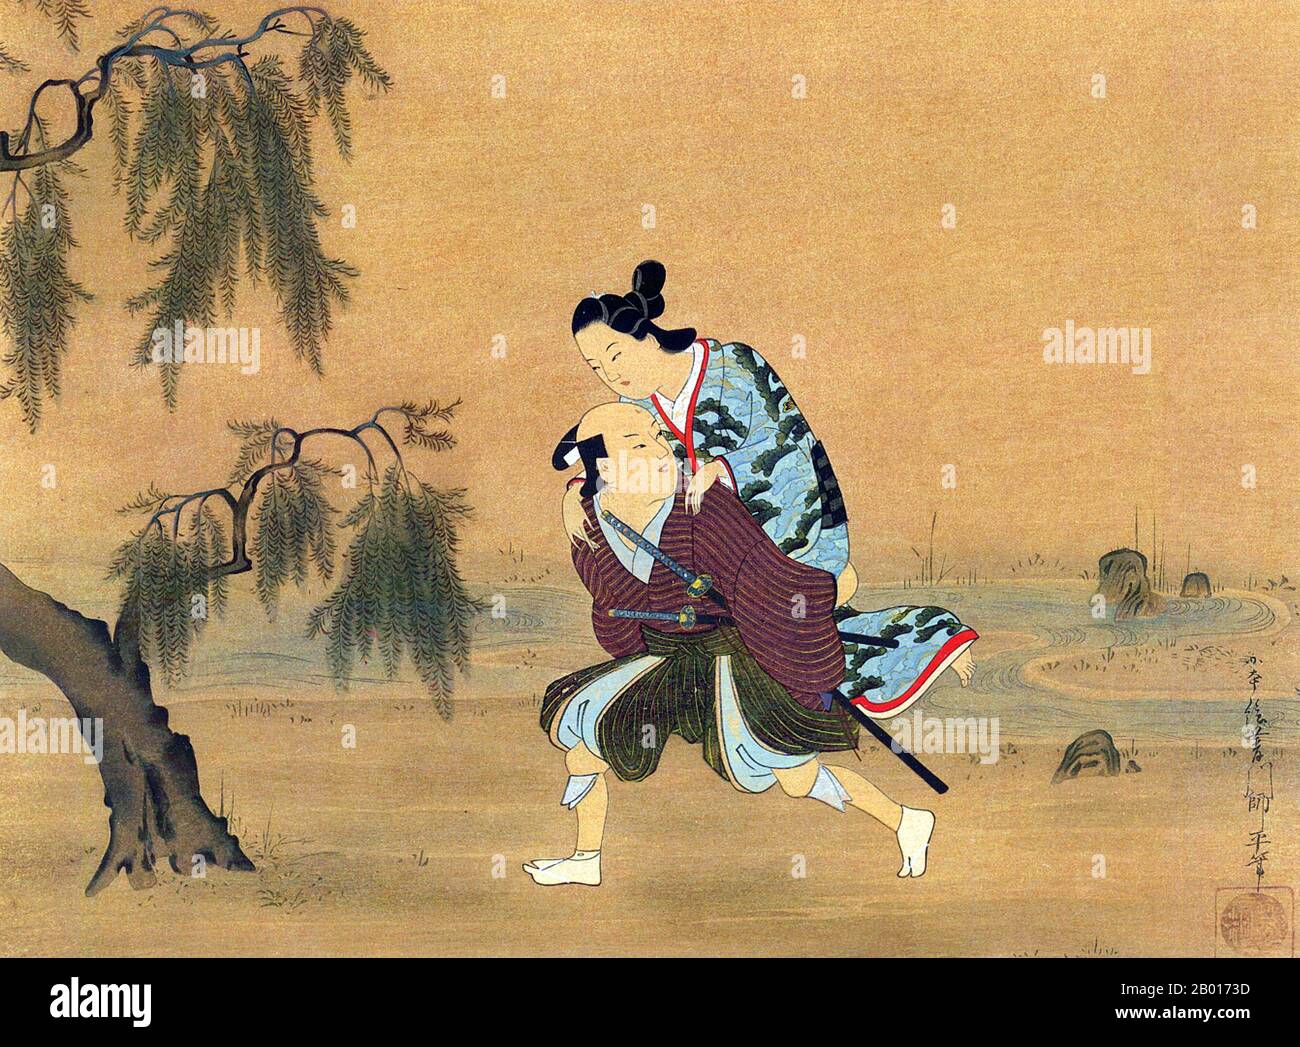 Japan: „eine junge Frau trägt eine Dame“. Handscroll Gemälde von Hishikawa Morofusa (aktive c. 1685-1715), c. 1700. Yamato-e ist ein Stil der japanischen Malerei, inspiriert von Gemälden der Tang-Dynastie und entwickelt in der späten Heian-Zeit. Es gilt als der klassische japanische Stil. Aus der Muromachi-Zeit (15th. Jahrhundert) wurde der Begriff Yamato-e verwendet, um Arbeiten von zeitgenössischen chinesischen Malereien (kara-e) zu unterscheiden, die von den Gemälden des Zen-Buddhismus der Song- und Yuan-Dynastie inspiriert wurden. Stockfoto